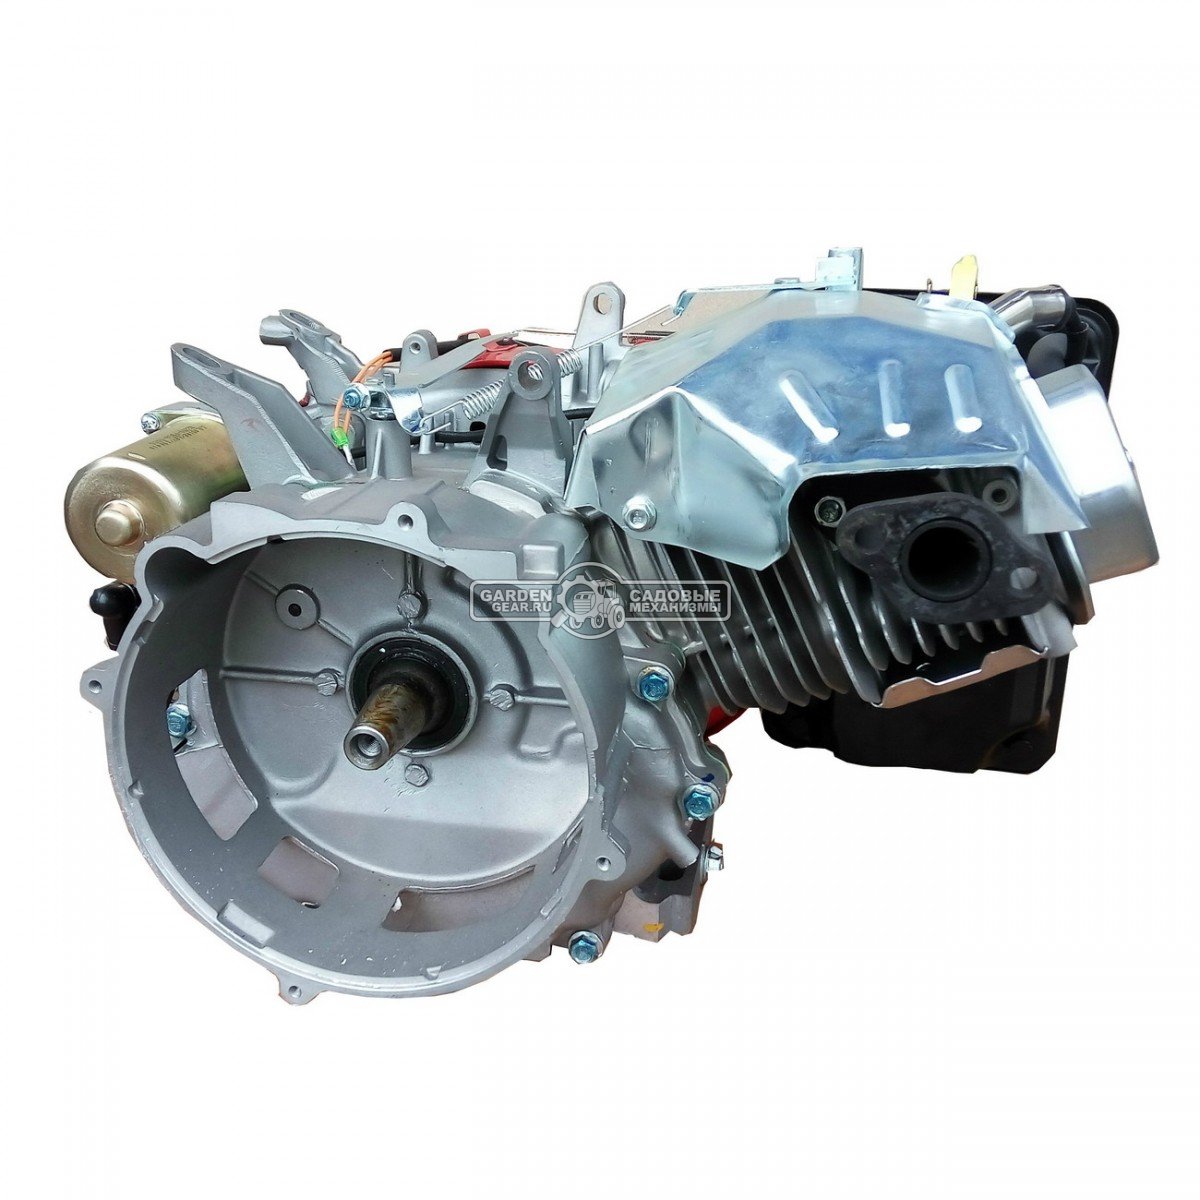 Бензиновый двигатель Zongshen 190FE-2 (PRC, 14 л.с., 420 см3. конус  1:5, эл. старт,33 кг)